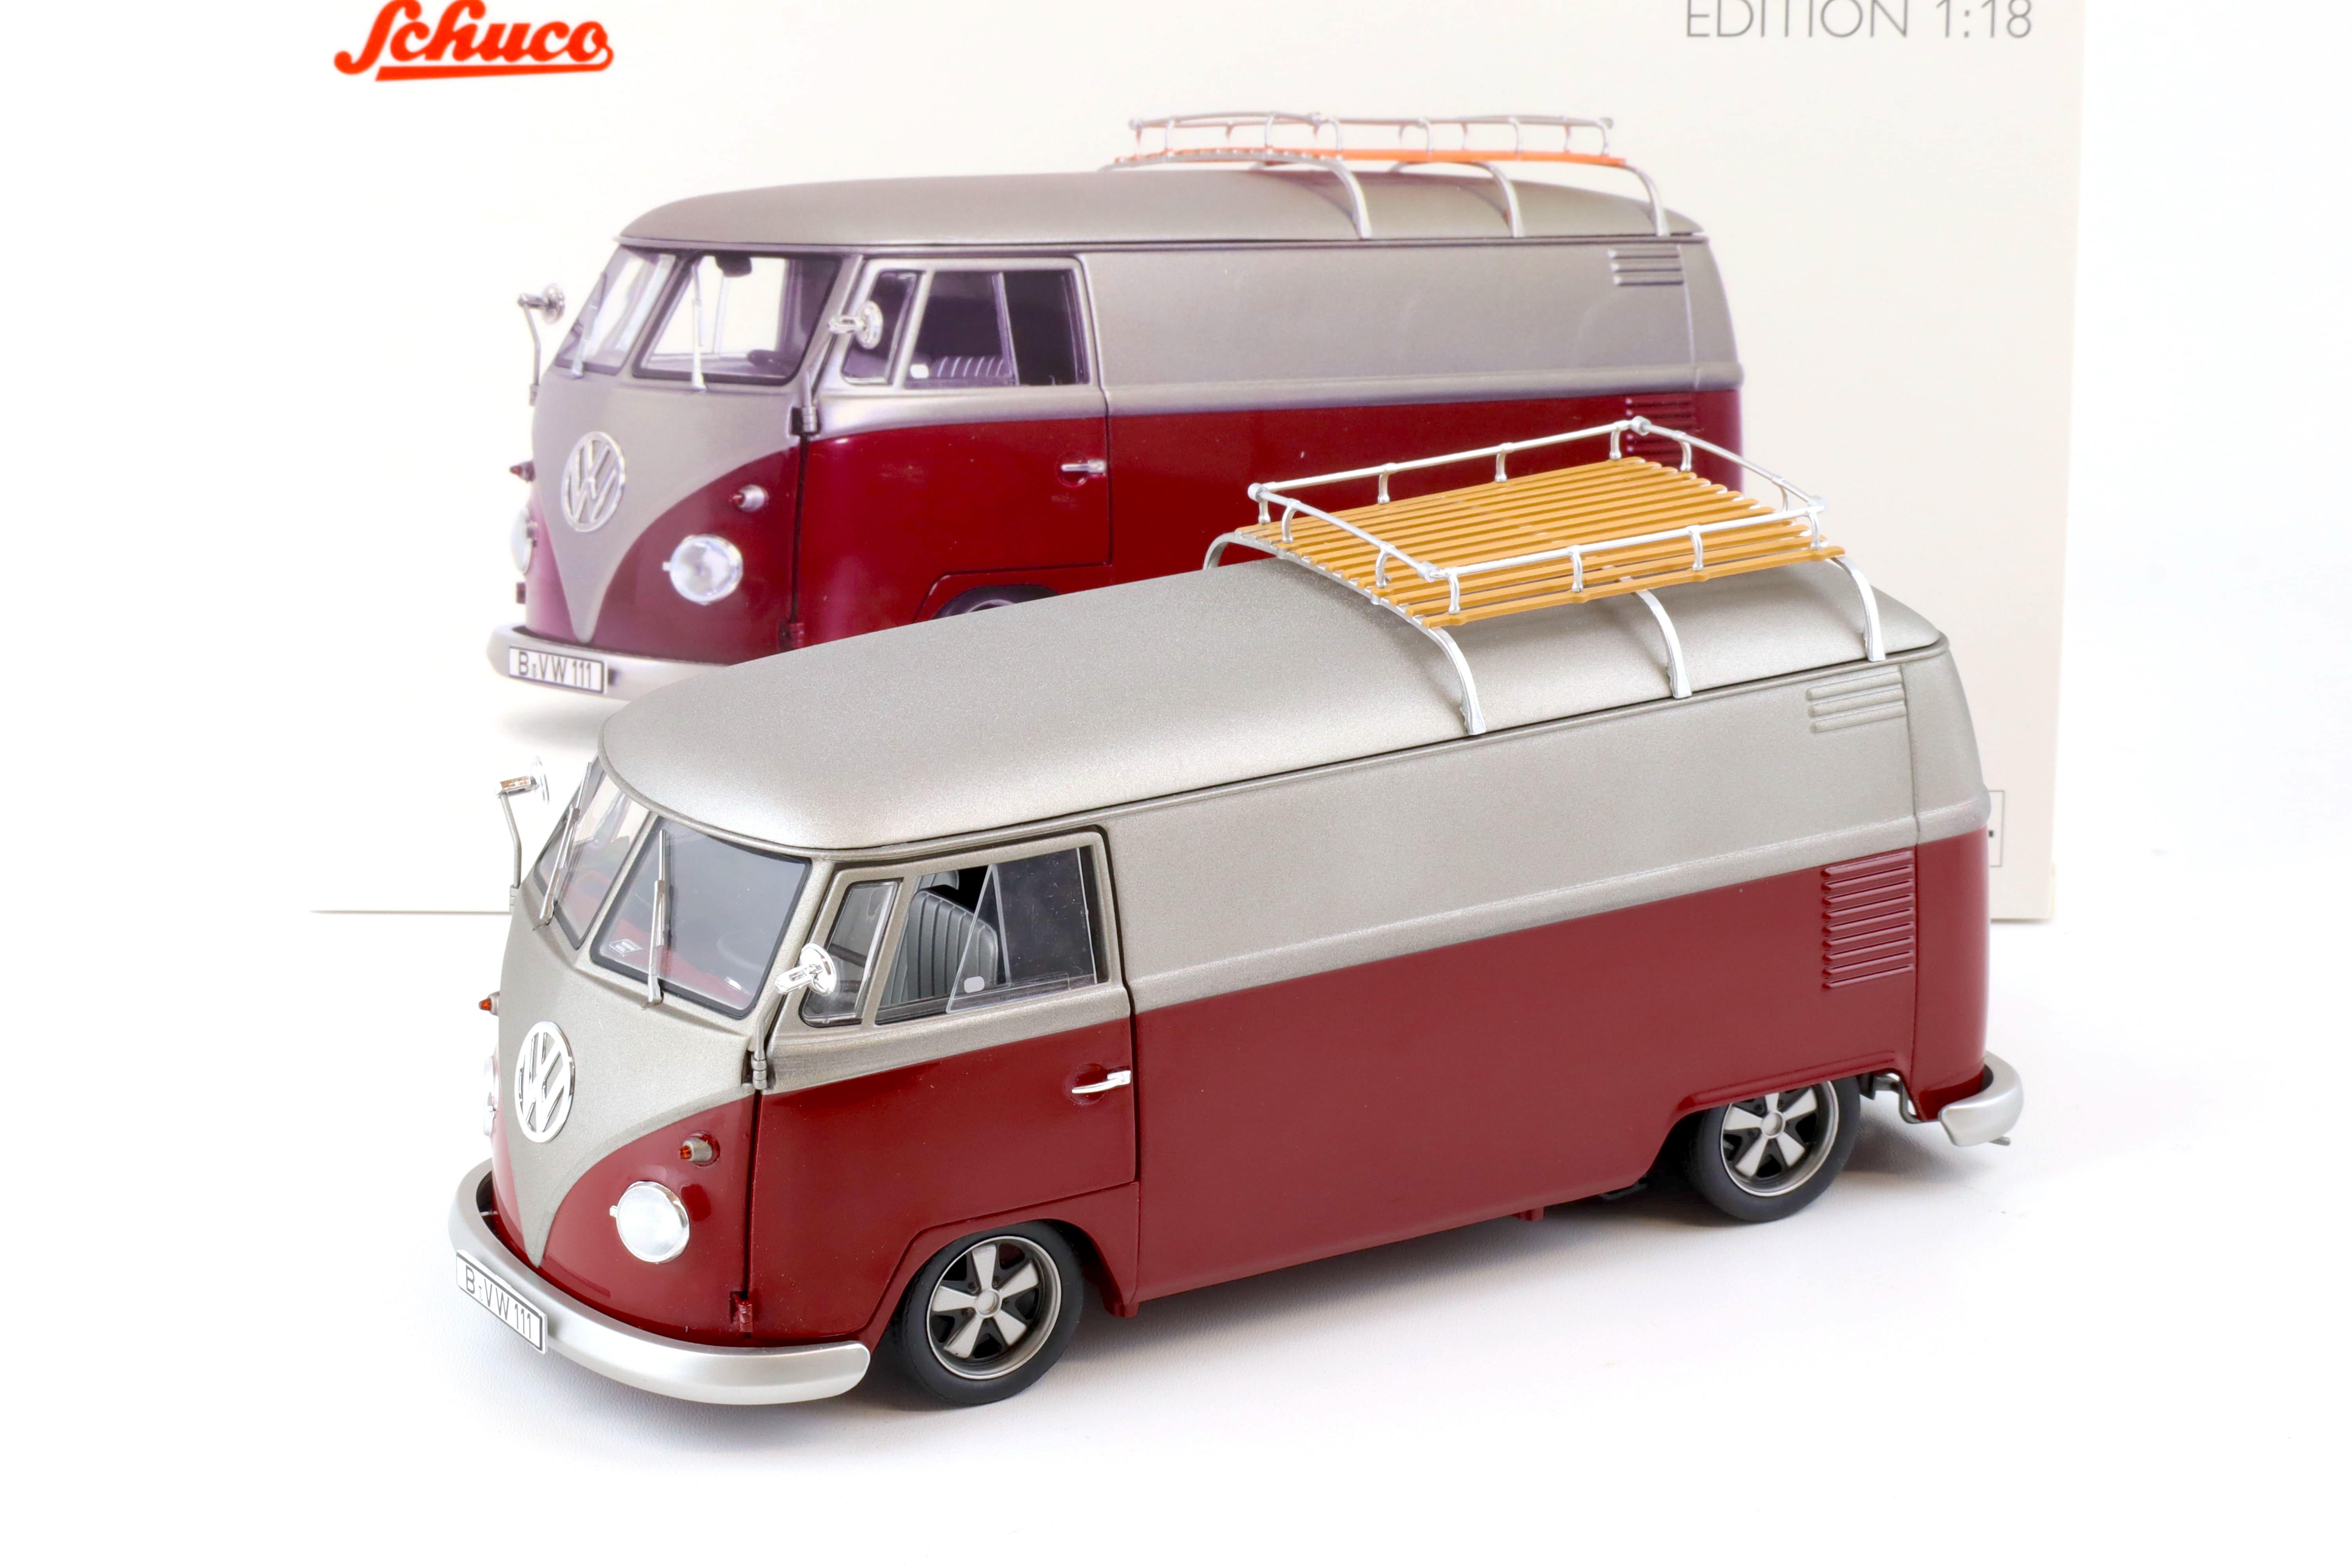 1:18 Schuco VW T1 Lowrider Bus red/ matt silver-grey 450045600